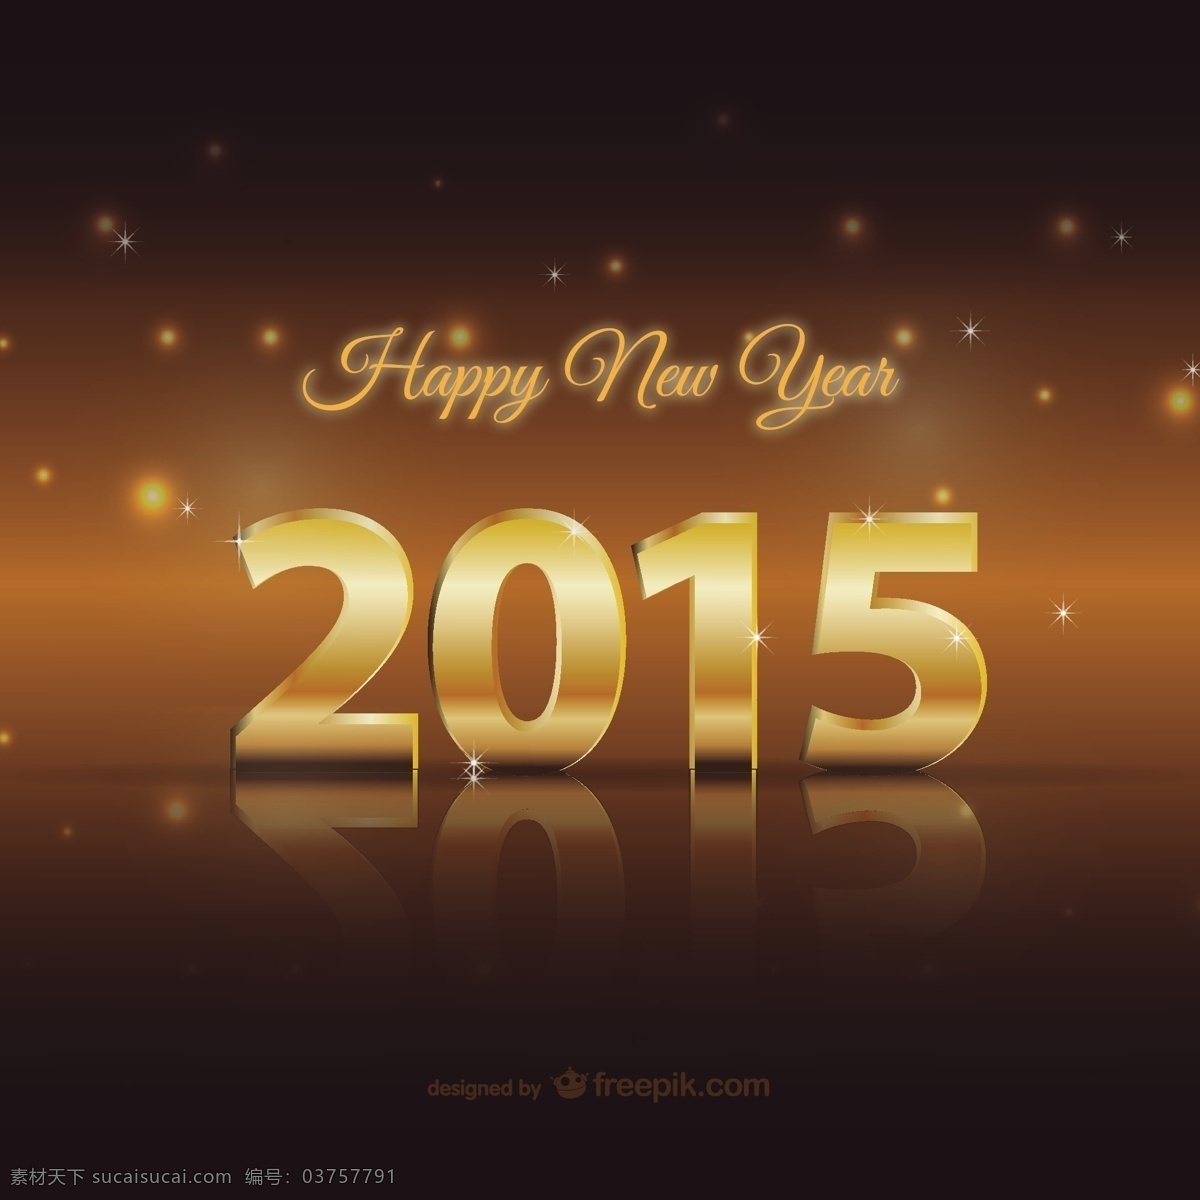 幸福 2015 张 金卡 片 背景 卡片 新年快乐 快乐 新 金 年 金背景 新的一年背景 黑色